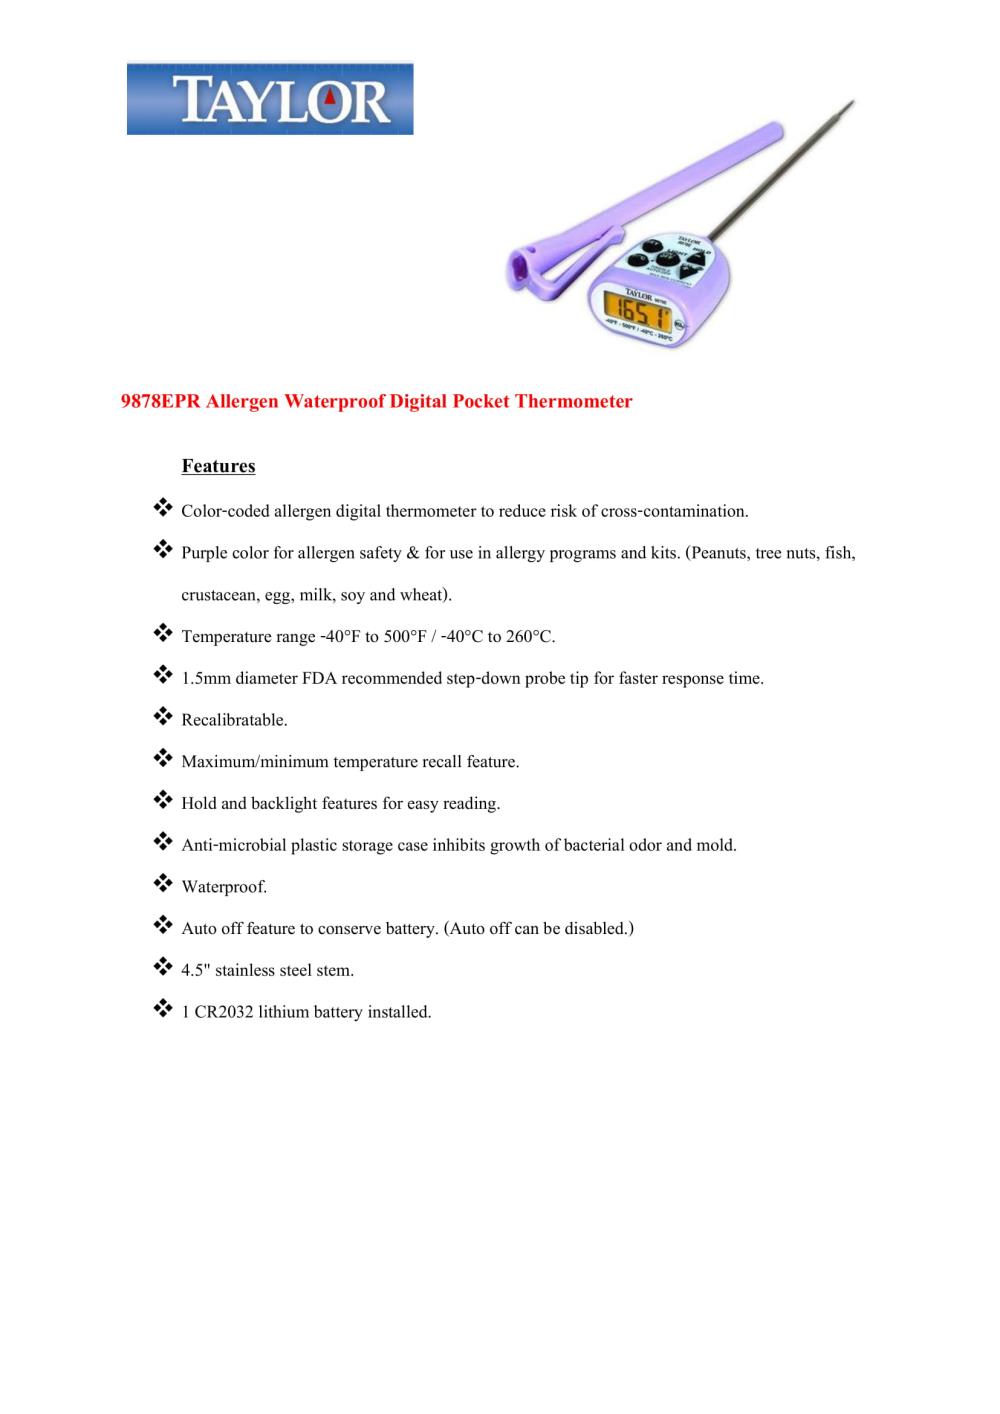 Taylor Waterproof Digital Thermometer Model 9878EPR